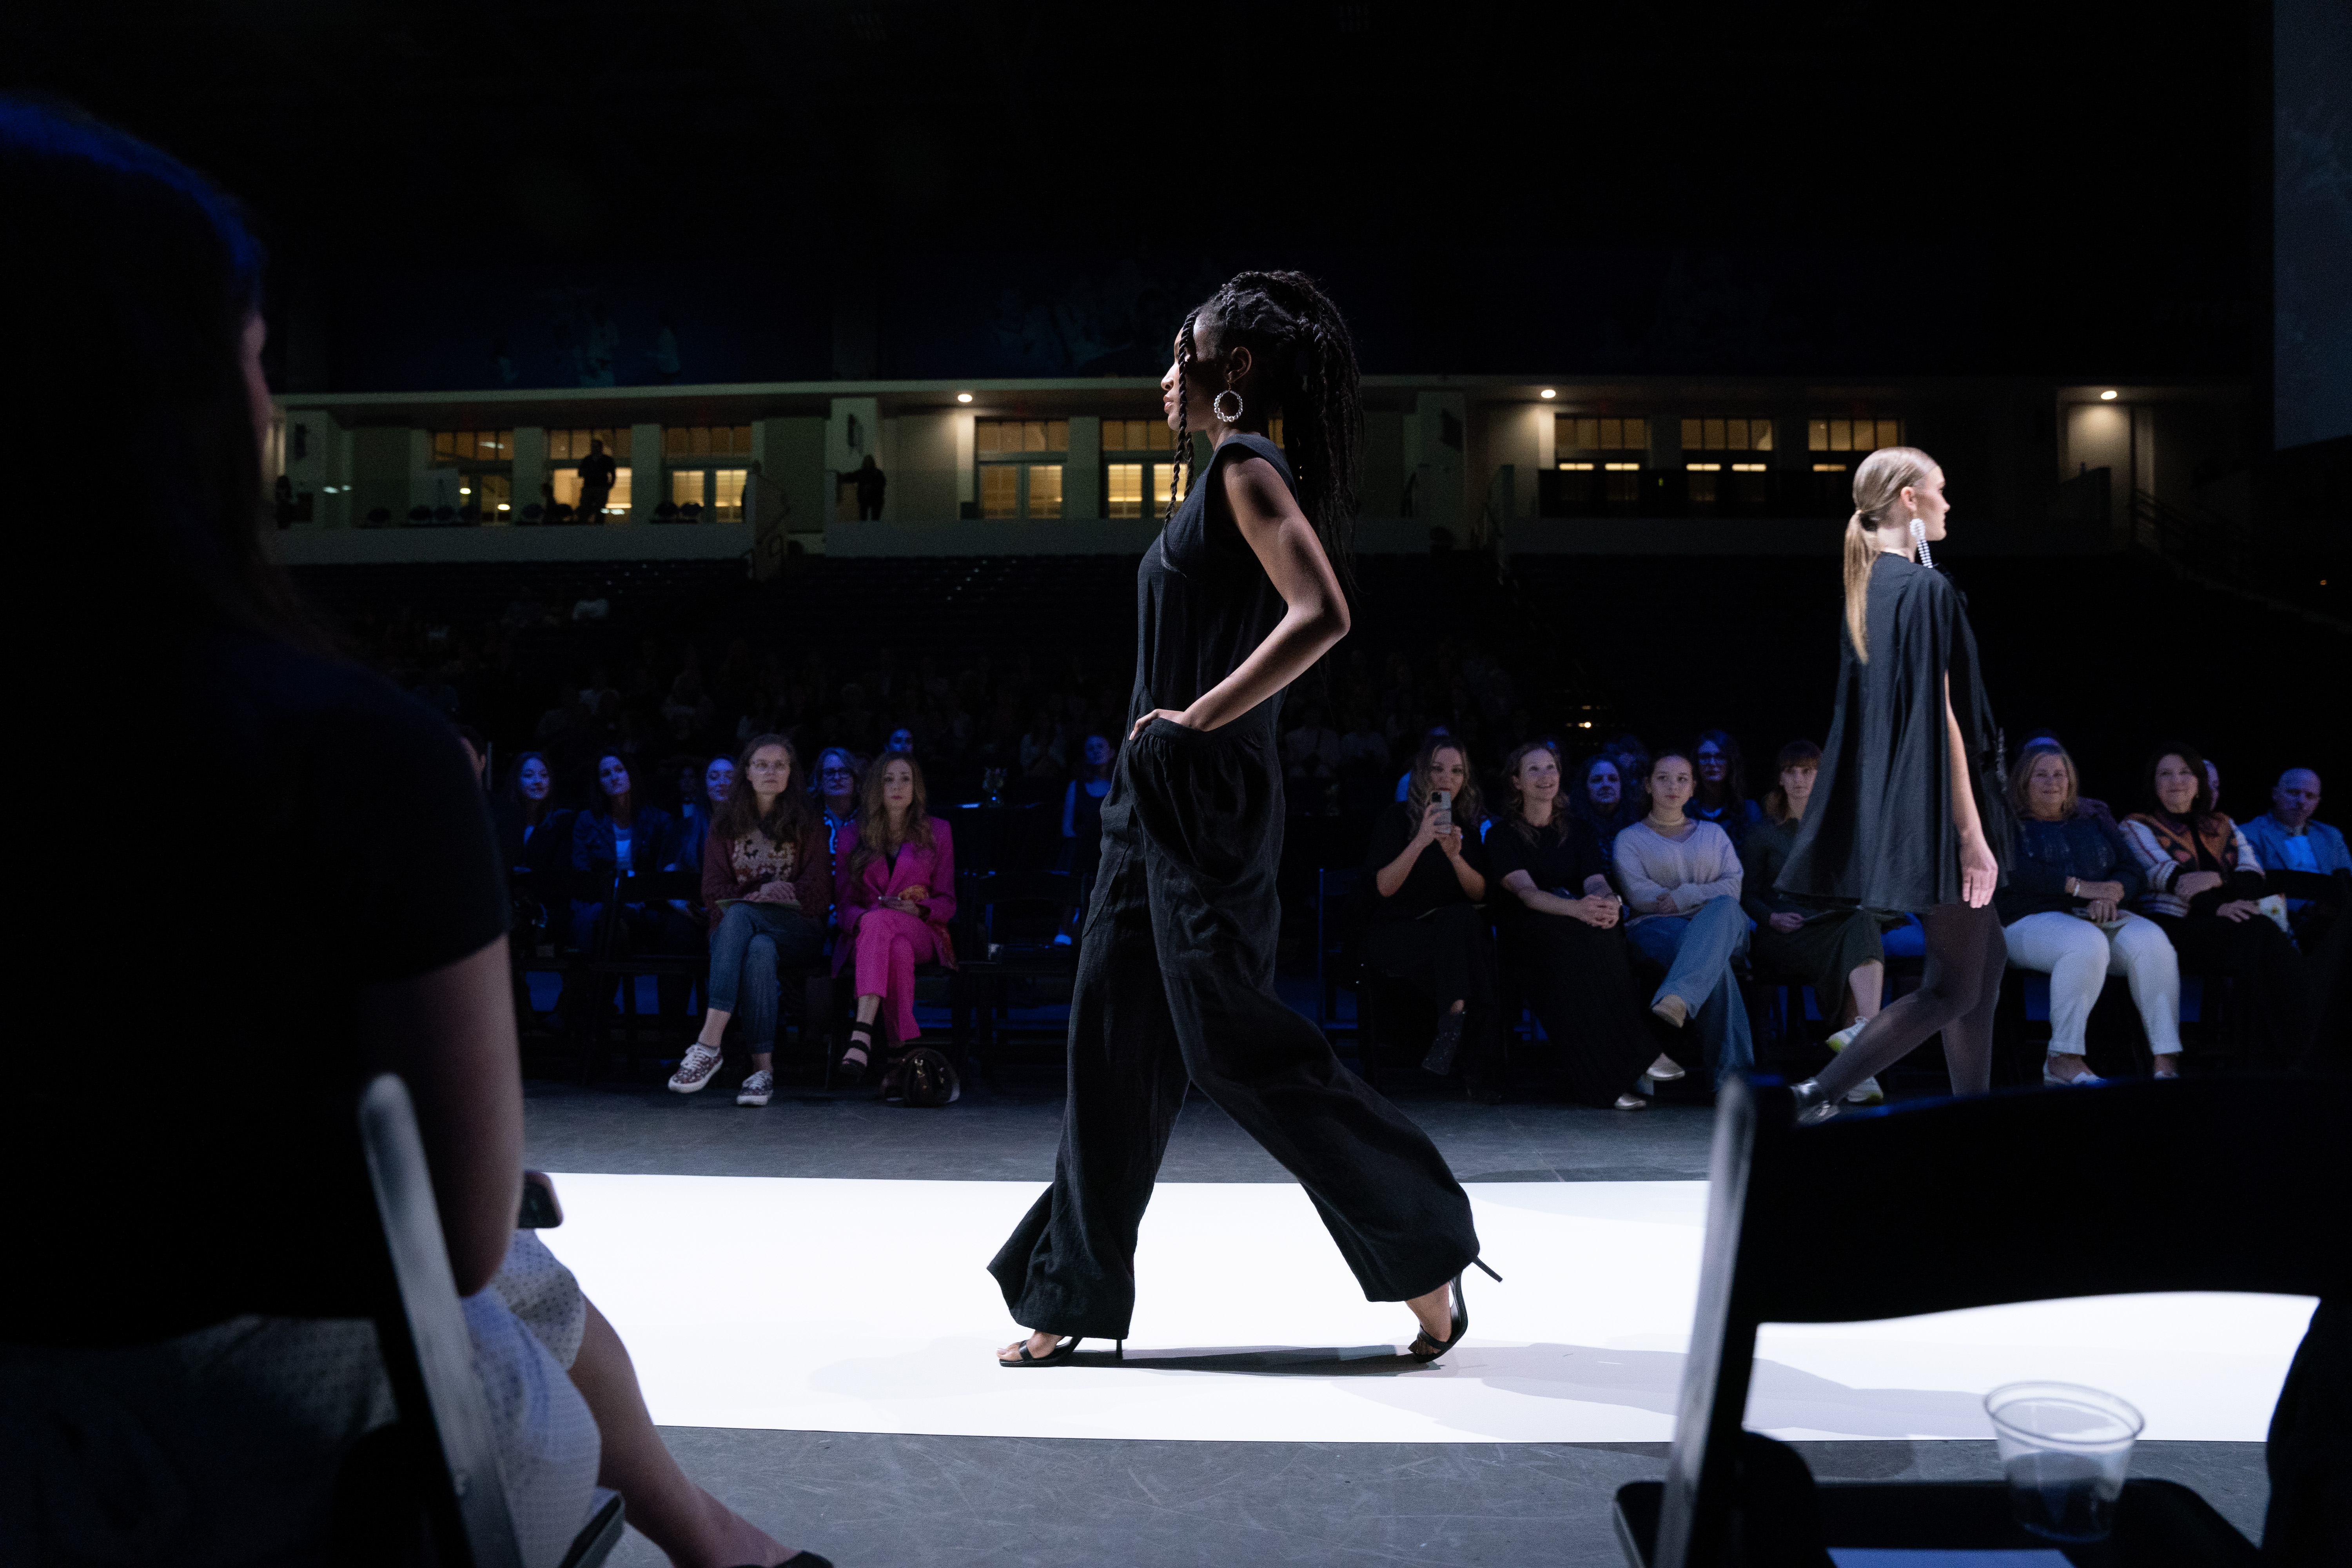 Model walks down runway in sleek black outfit